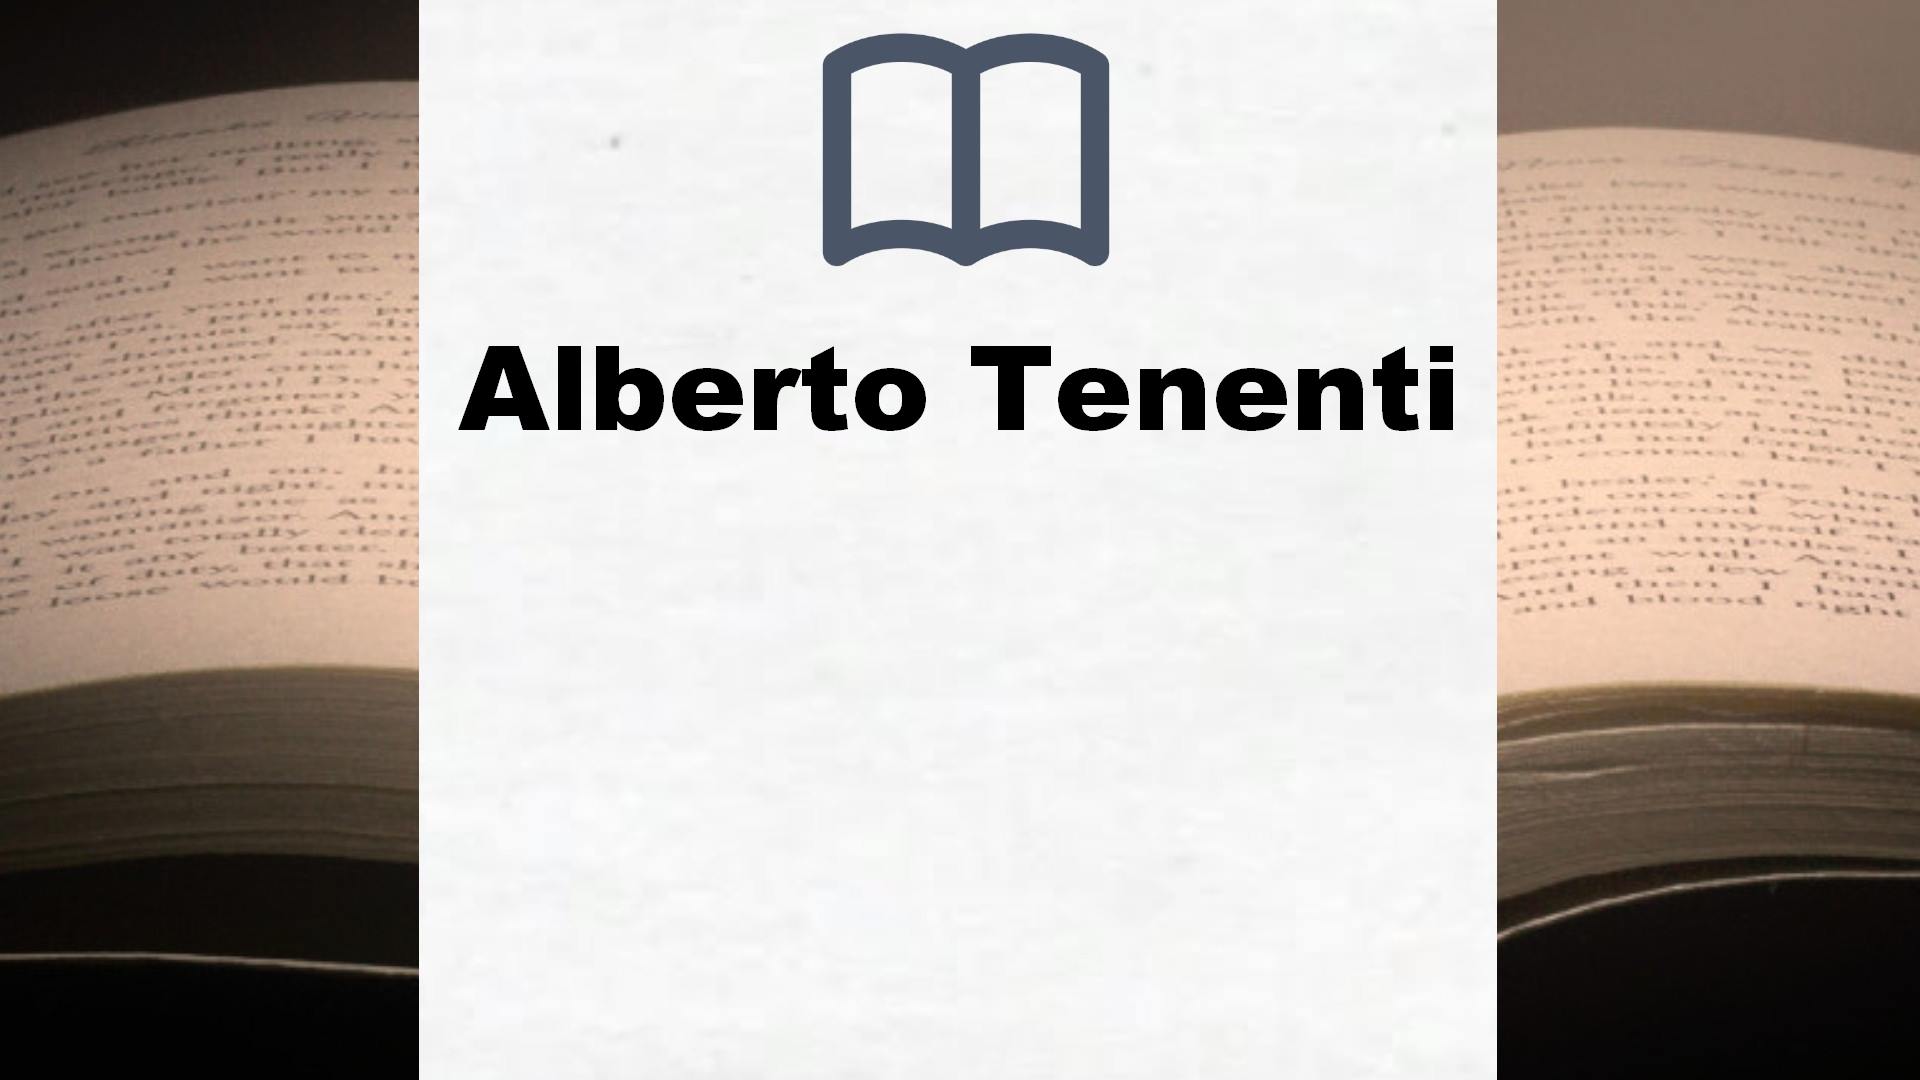 Libros Alberto Tenenti